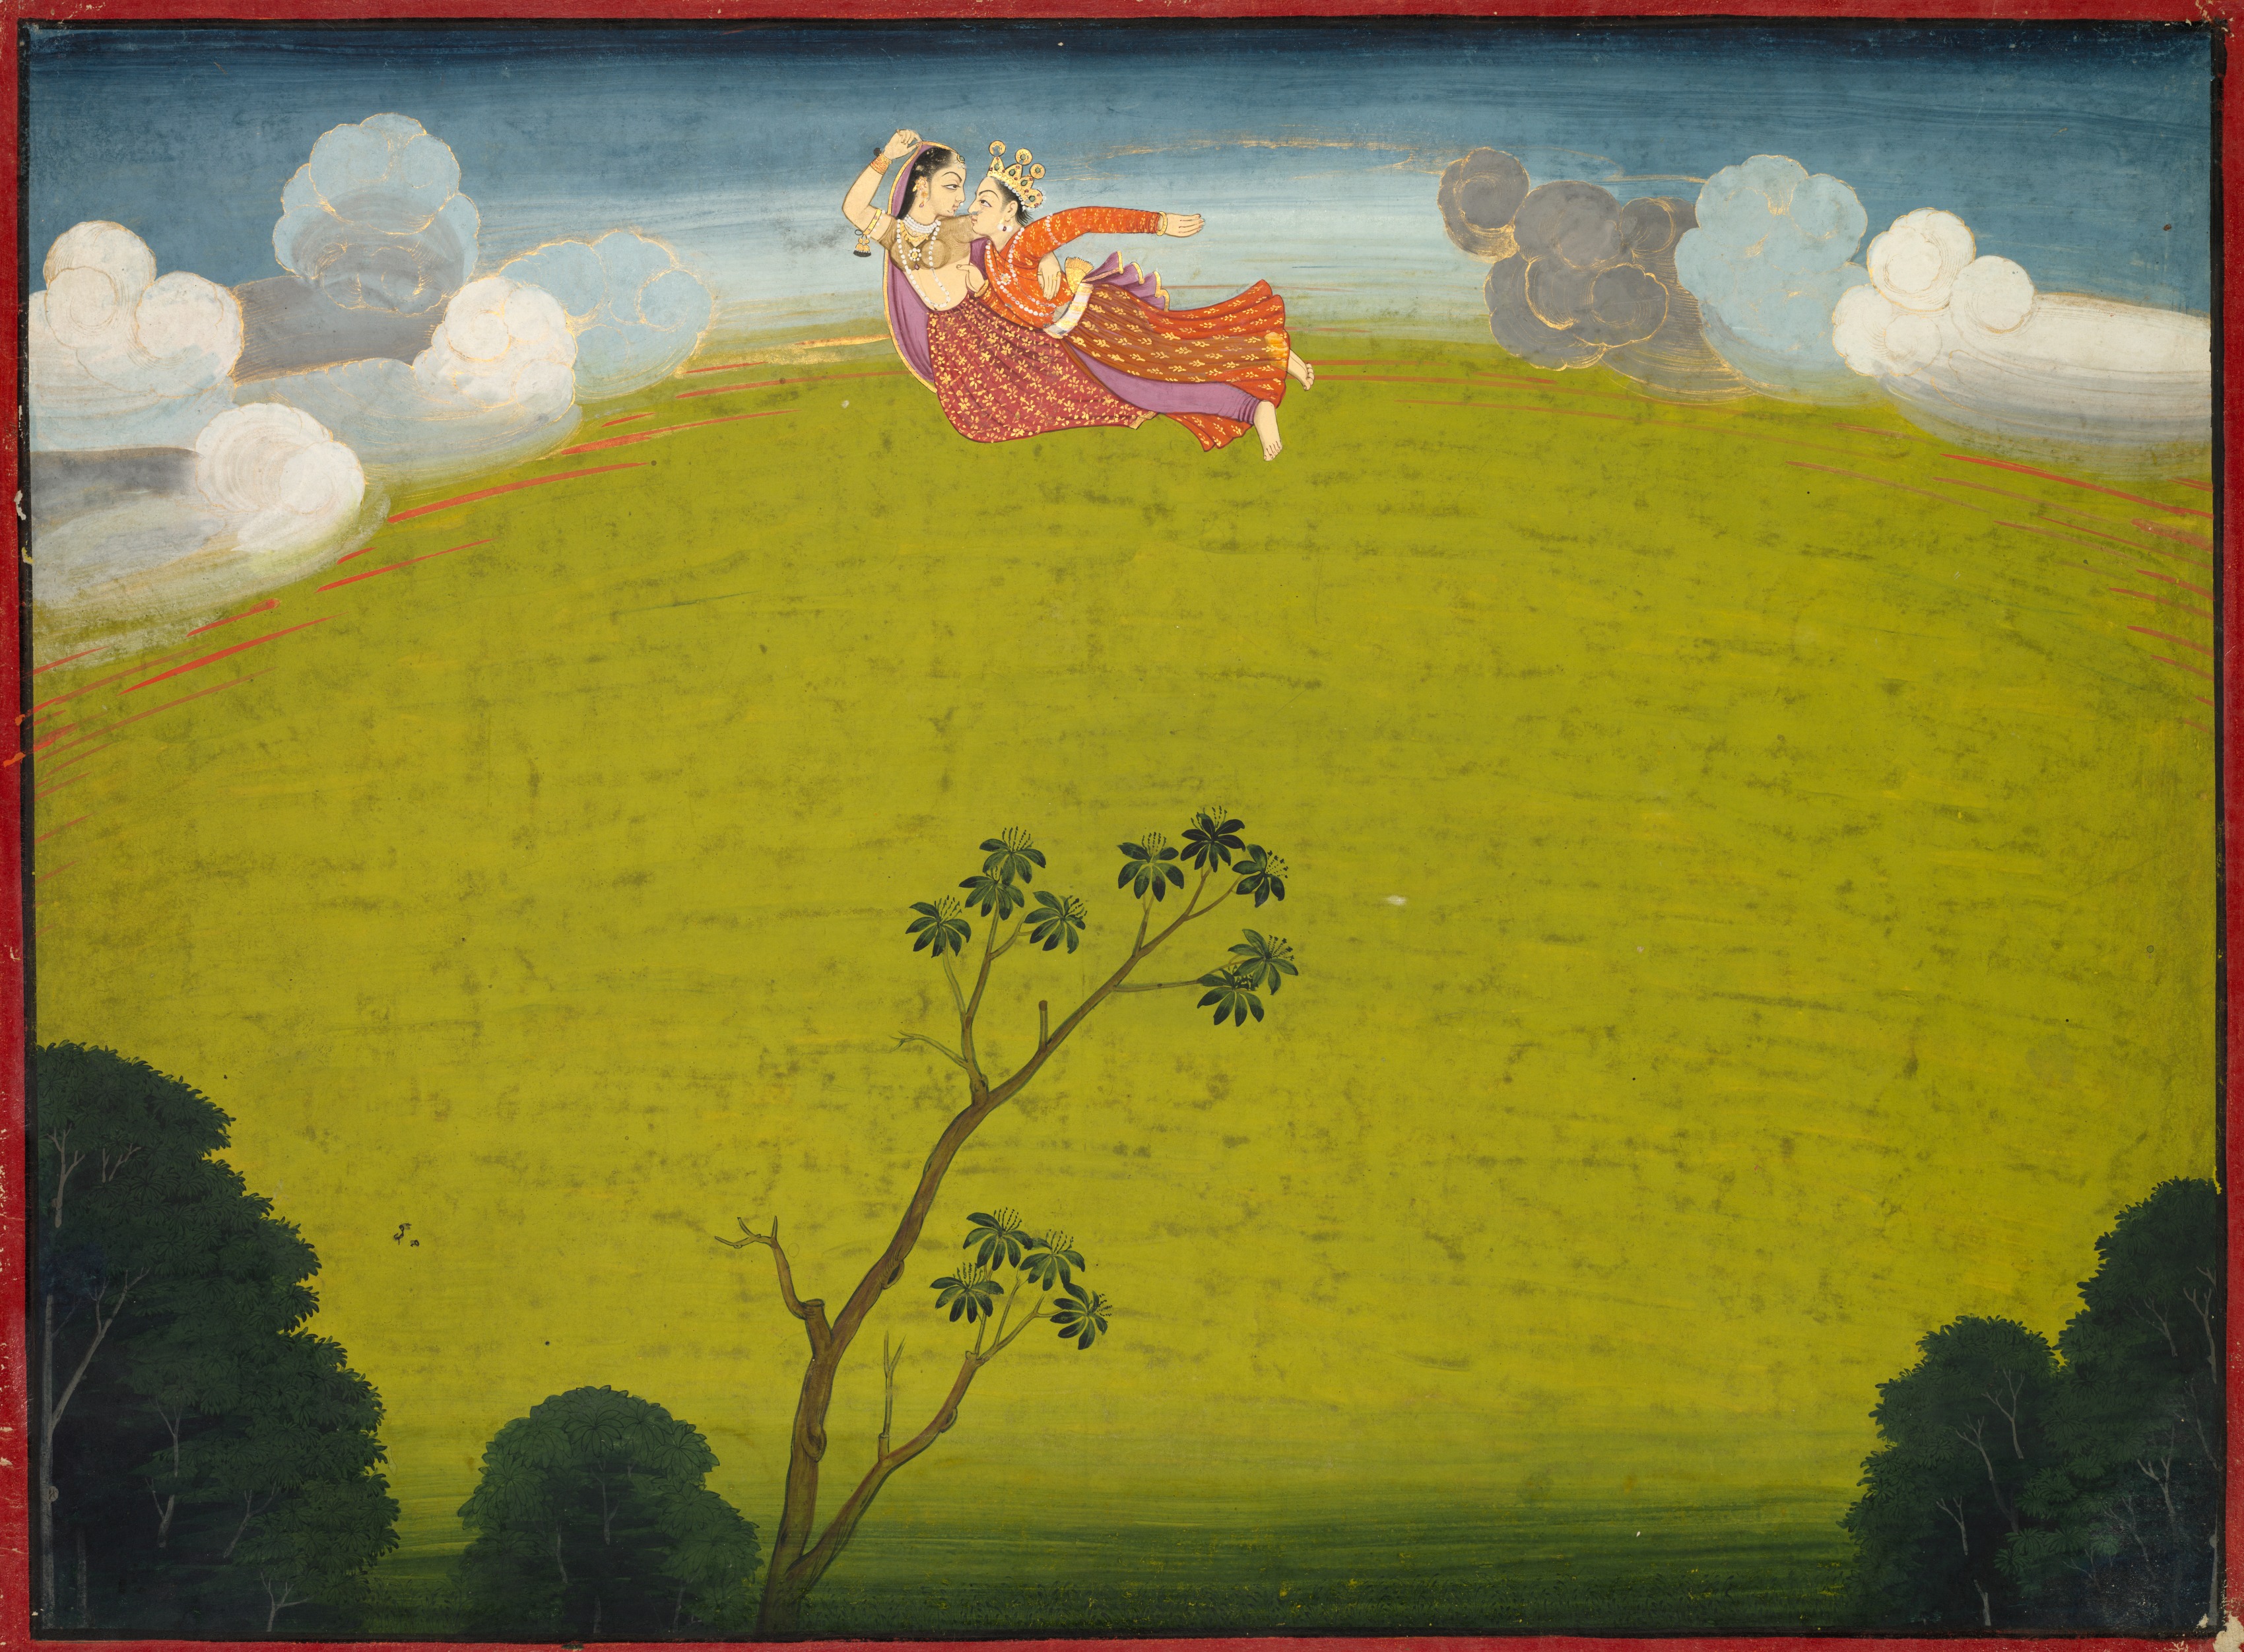 Pradyumna and Mayavati Fly to Dvaraka, from the Large Basohli Bhagavata Purana